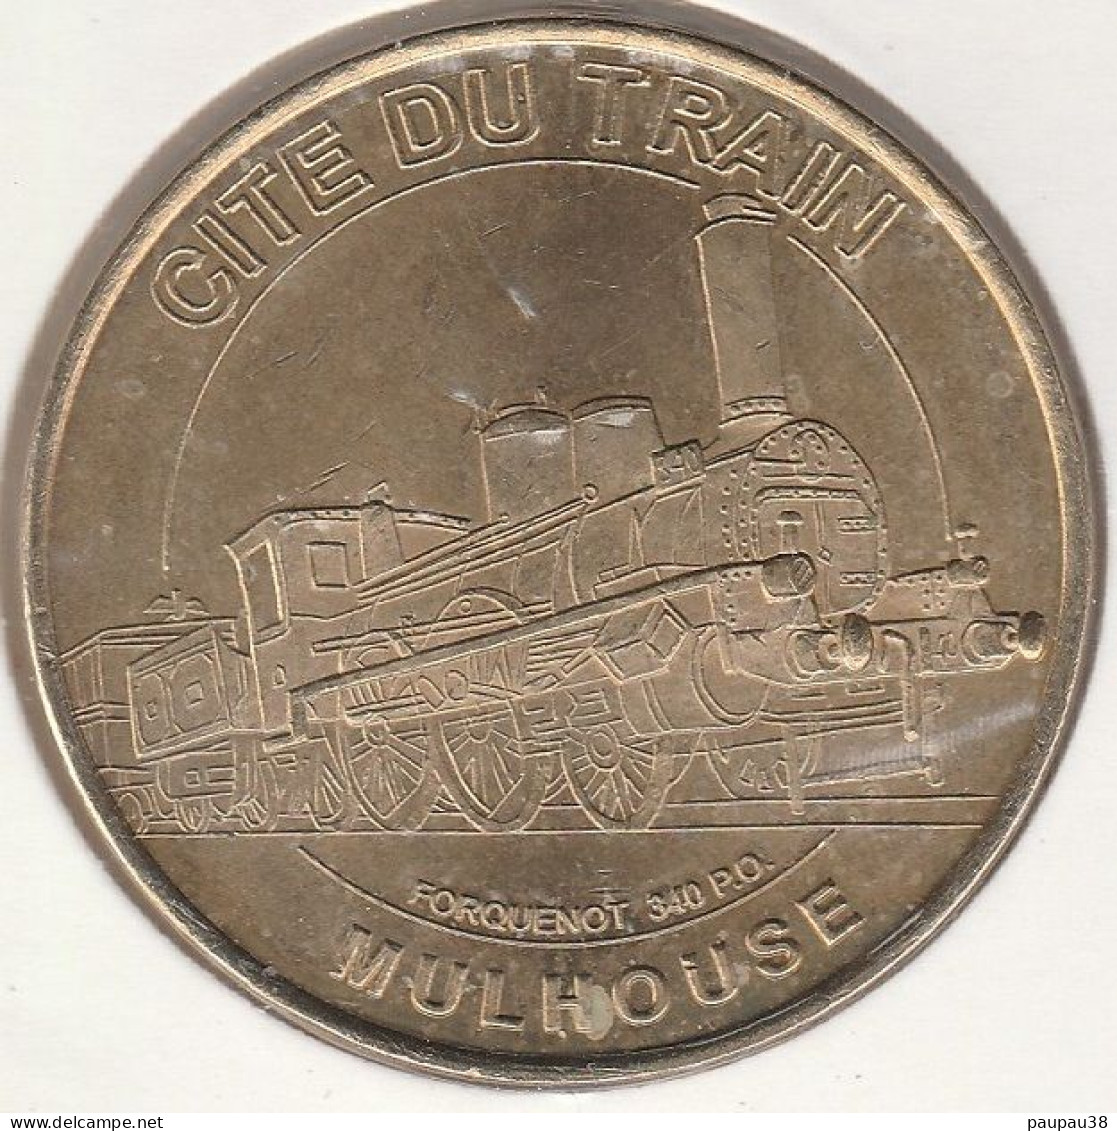 MONNAIE DE PARIS 2005 - 68 MULHOUSE Cité Du Train - Cité Du Train Forquenot 340 P.O - 2005